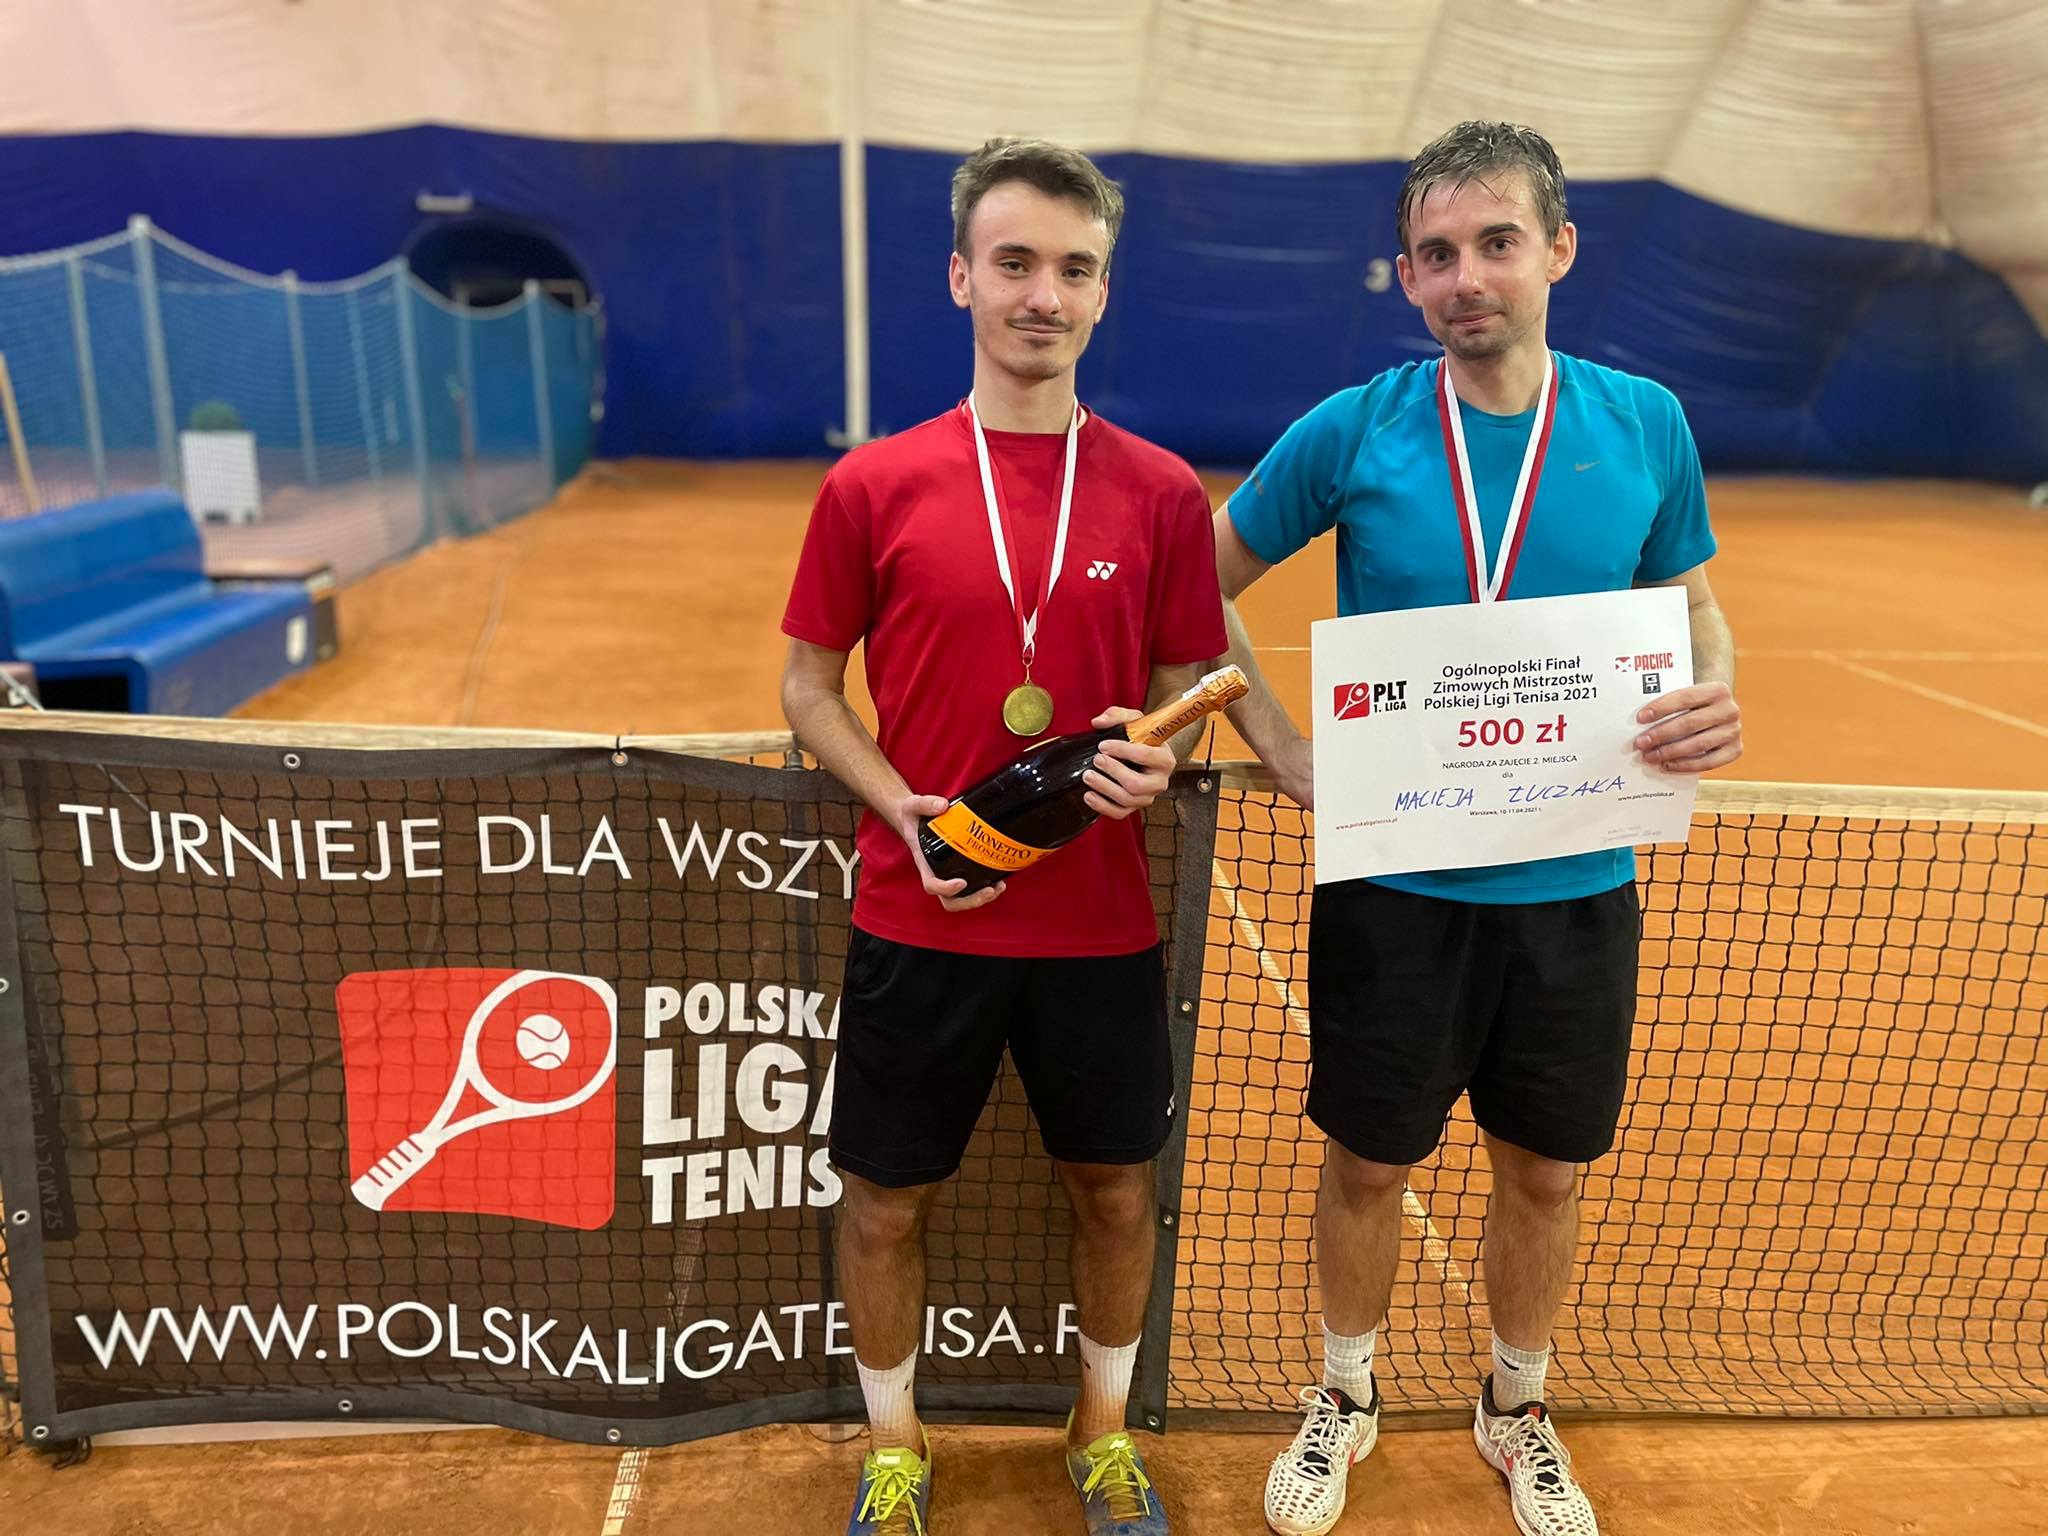 Złote medale Zimowych Mistrzostw Polskiej Ligi Tenisa 2021 dla Wiśniewskiego, Waleckiego i Galińskiego